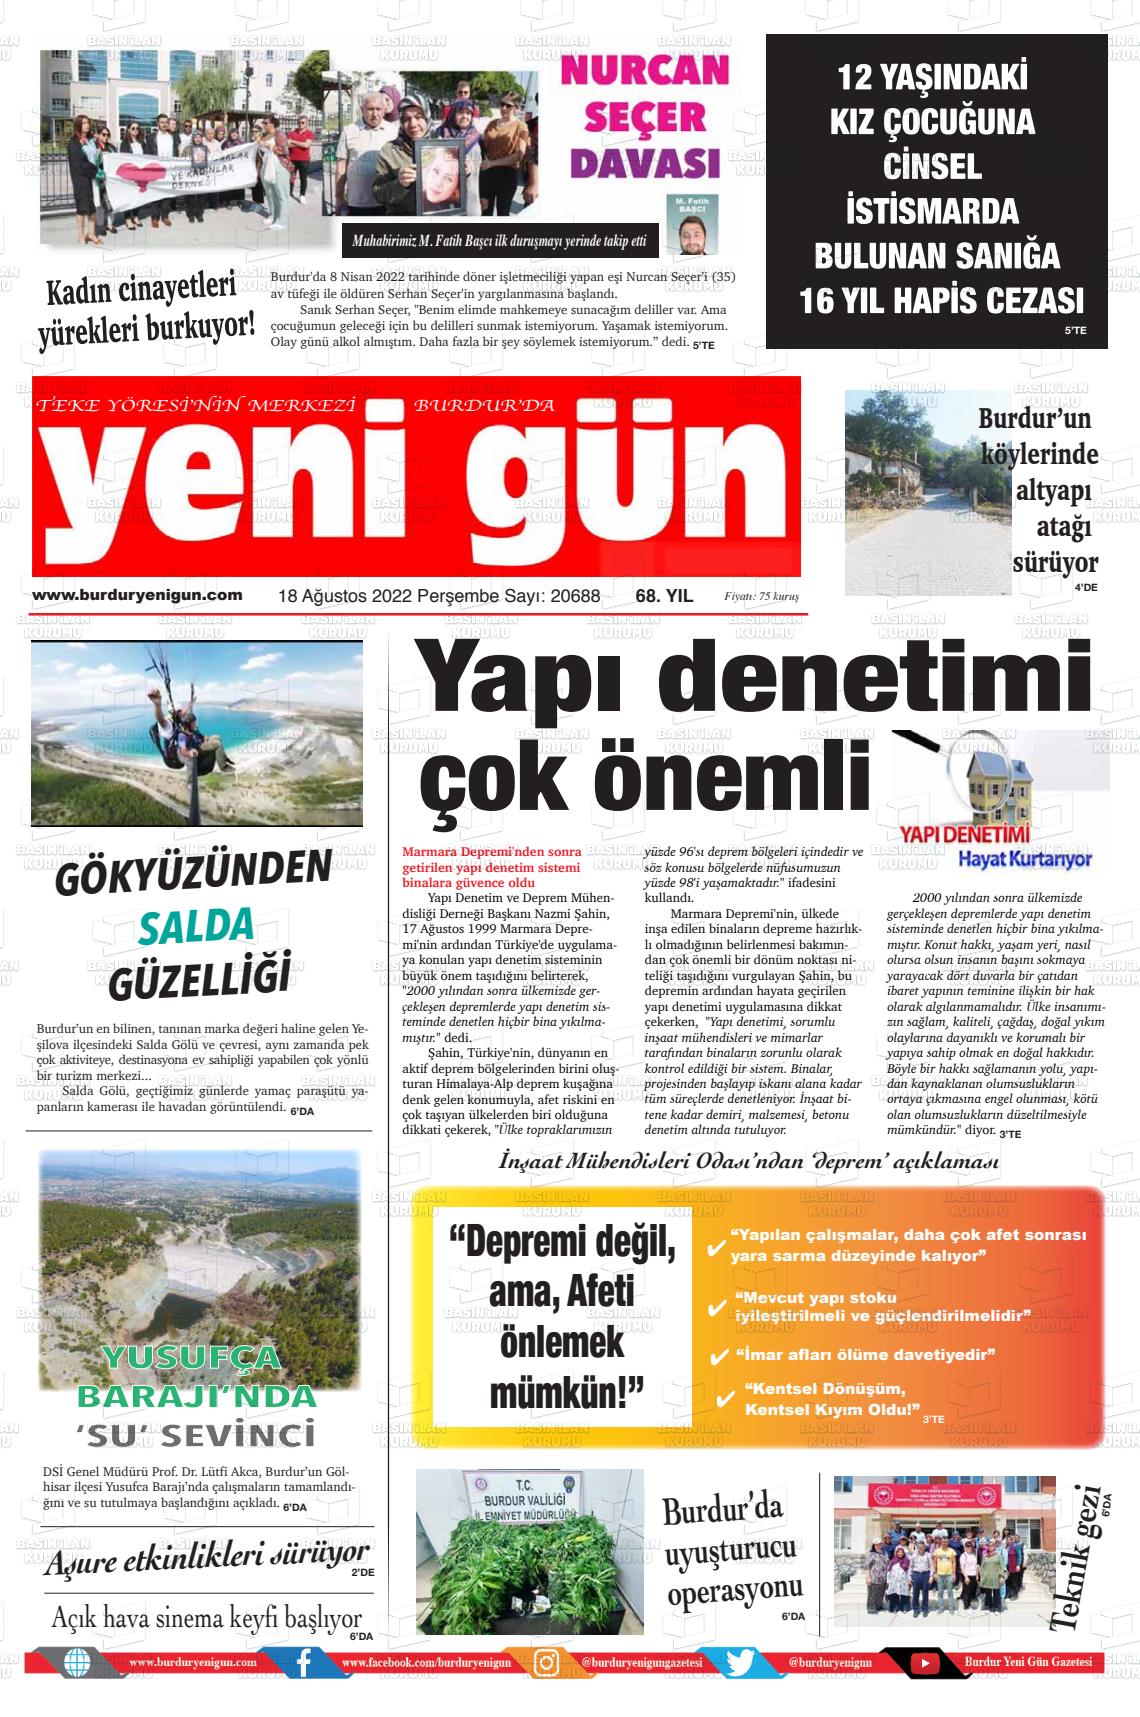 18 Ağustos 2022 Burdur Yeni Gün Gazete Manşeti